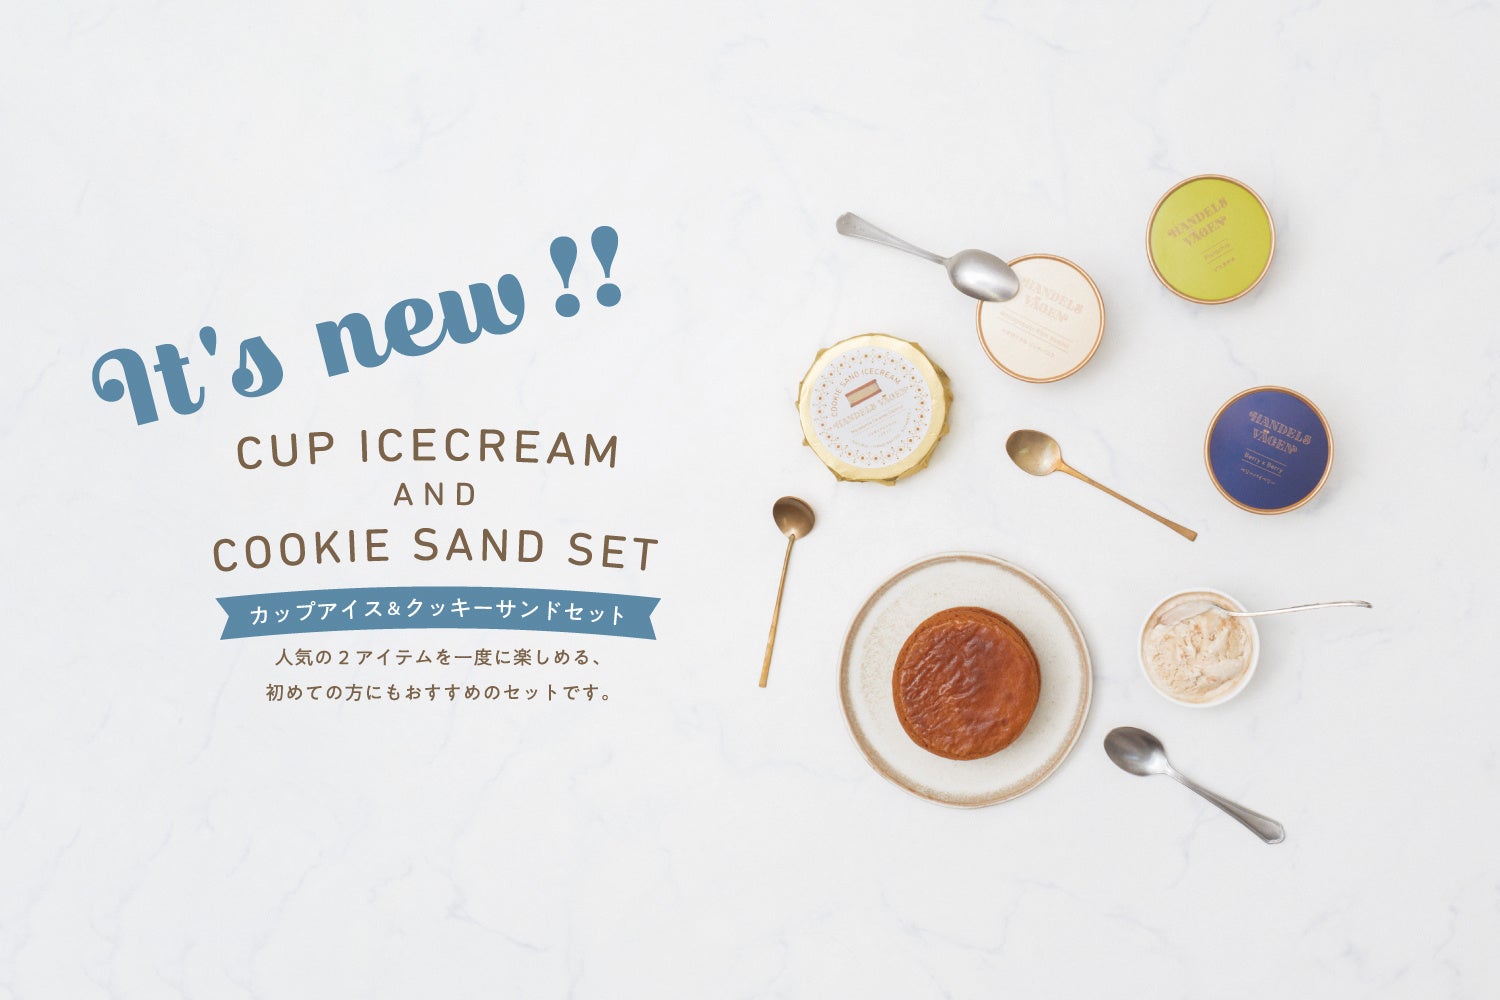 無添加クラフトアイスクリーム「HANDELS VÄGEN」から、カップアイスとクッキーサンドのスペシャルなセットが登場。2022年8月3日(水)より毎週水曜日12:00に販売。